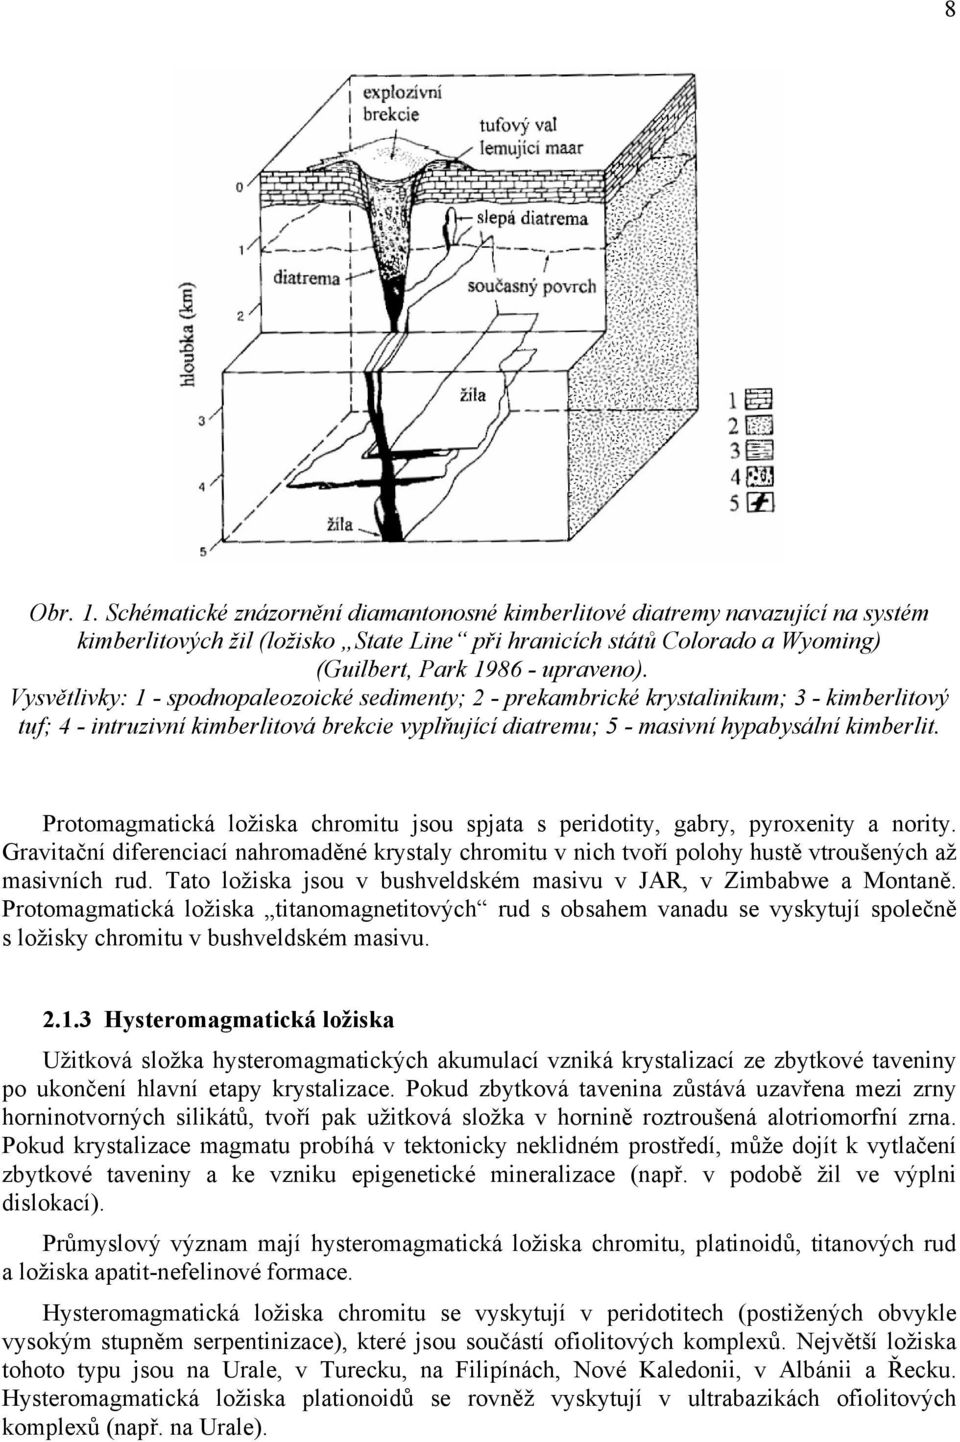 Vysvětlivky: 1 - spodnopaleozoické sedimenty; 2 - prekambrické krystalinikum; 3 - kimberlitový tuf; 4 - intruzivní kimberlitová brekcie vyplňující diatremu; 5 - masivní hypabysální kimberlit.